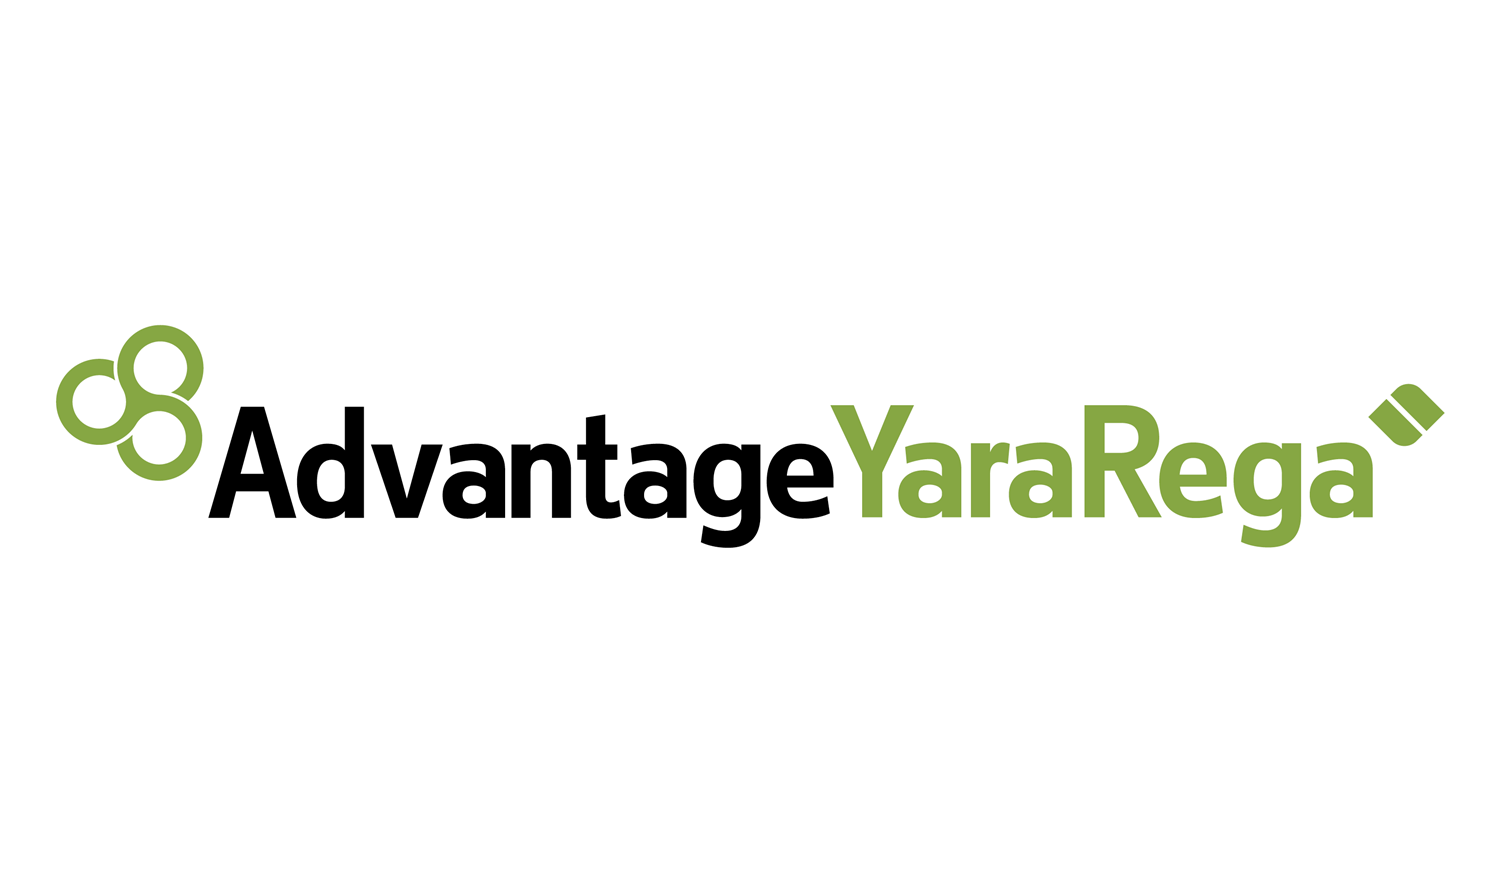 Yara-Rega-logo-112023XL.png